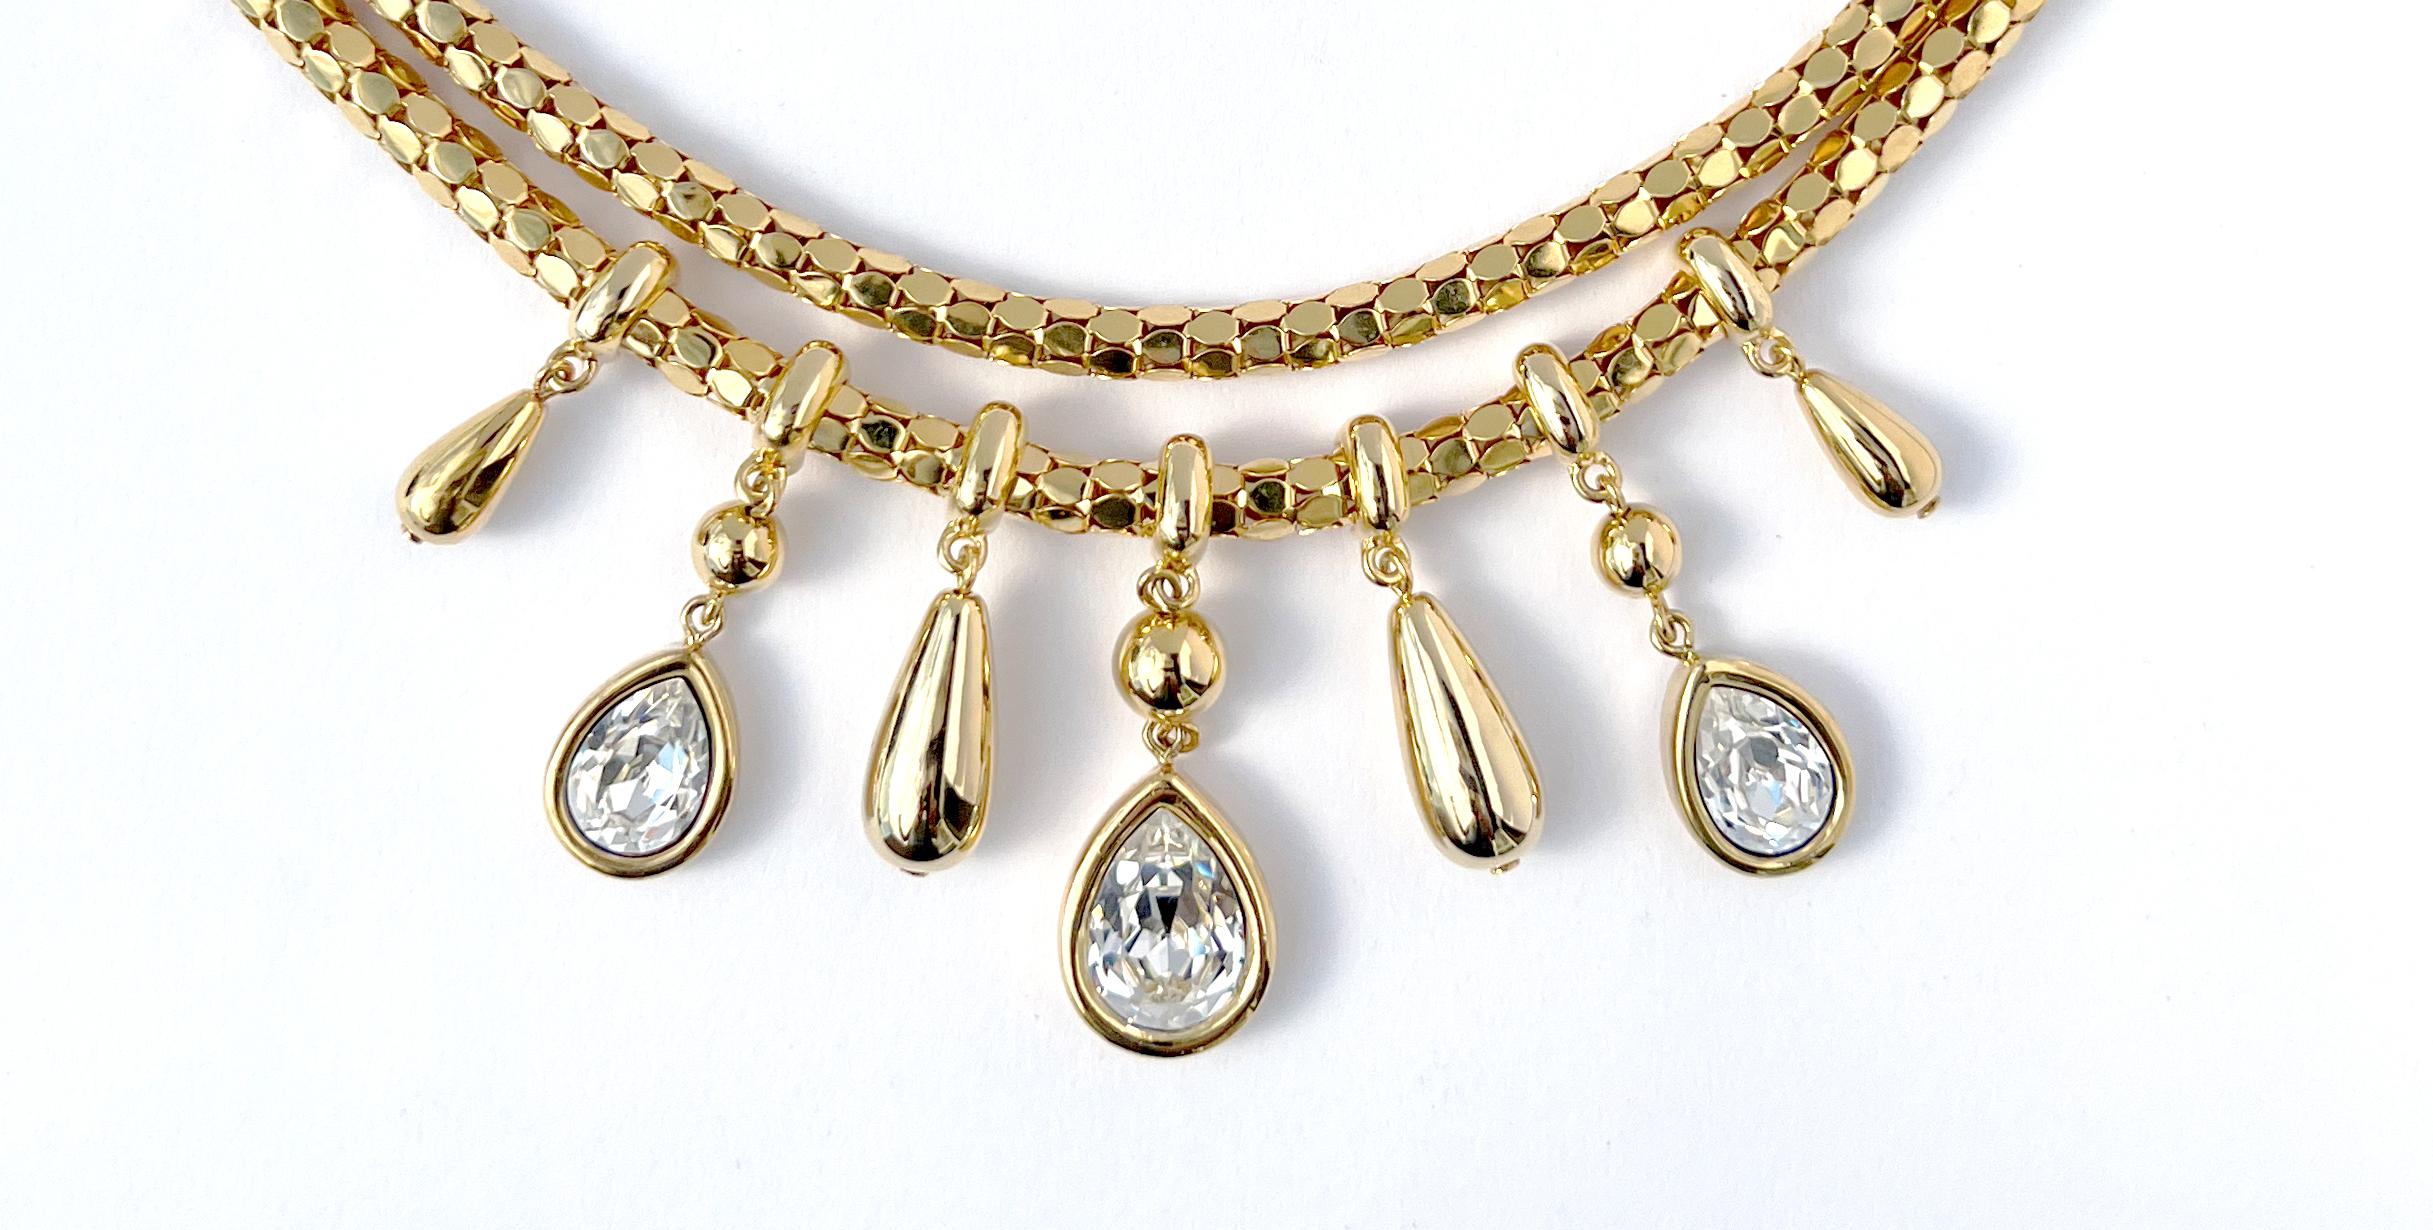 Vintage By Givenchy-Halskette aus den 1990er Jahren in Goldblech.  Diese Halskette in Choker-Länge besteht aus zwei leichten und flexiblen, hohlen, geflochtenen Schlangenketten, die sich nahtlos aneinander legen. Die untere Kette ist mit sieben